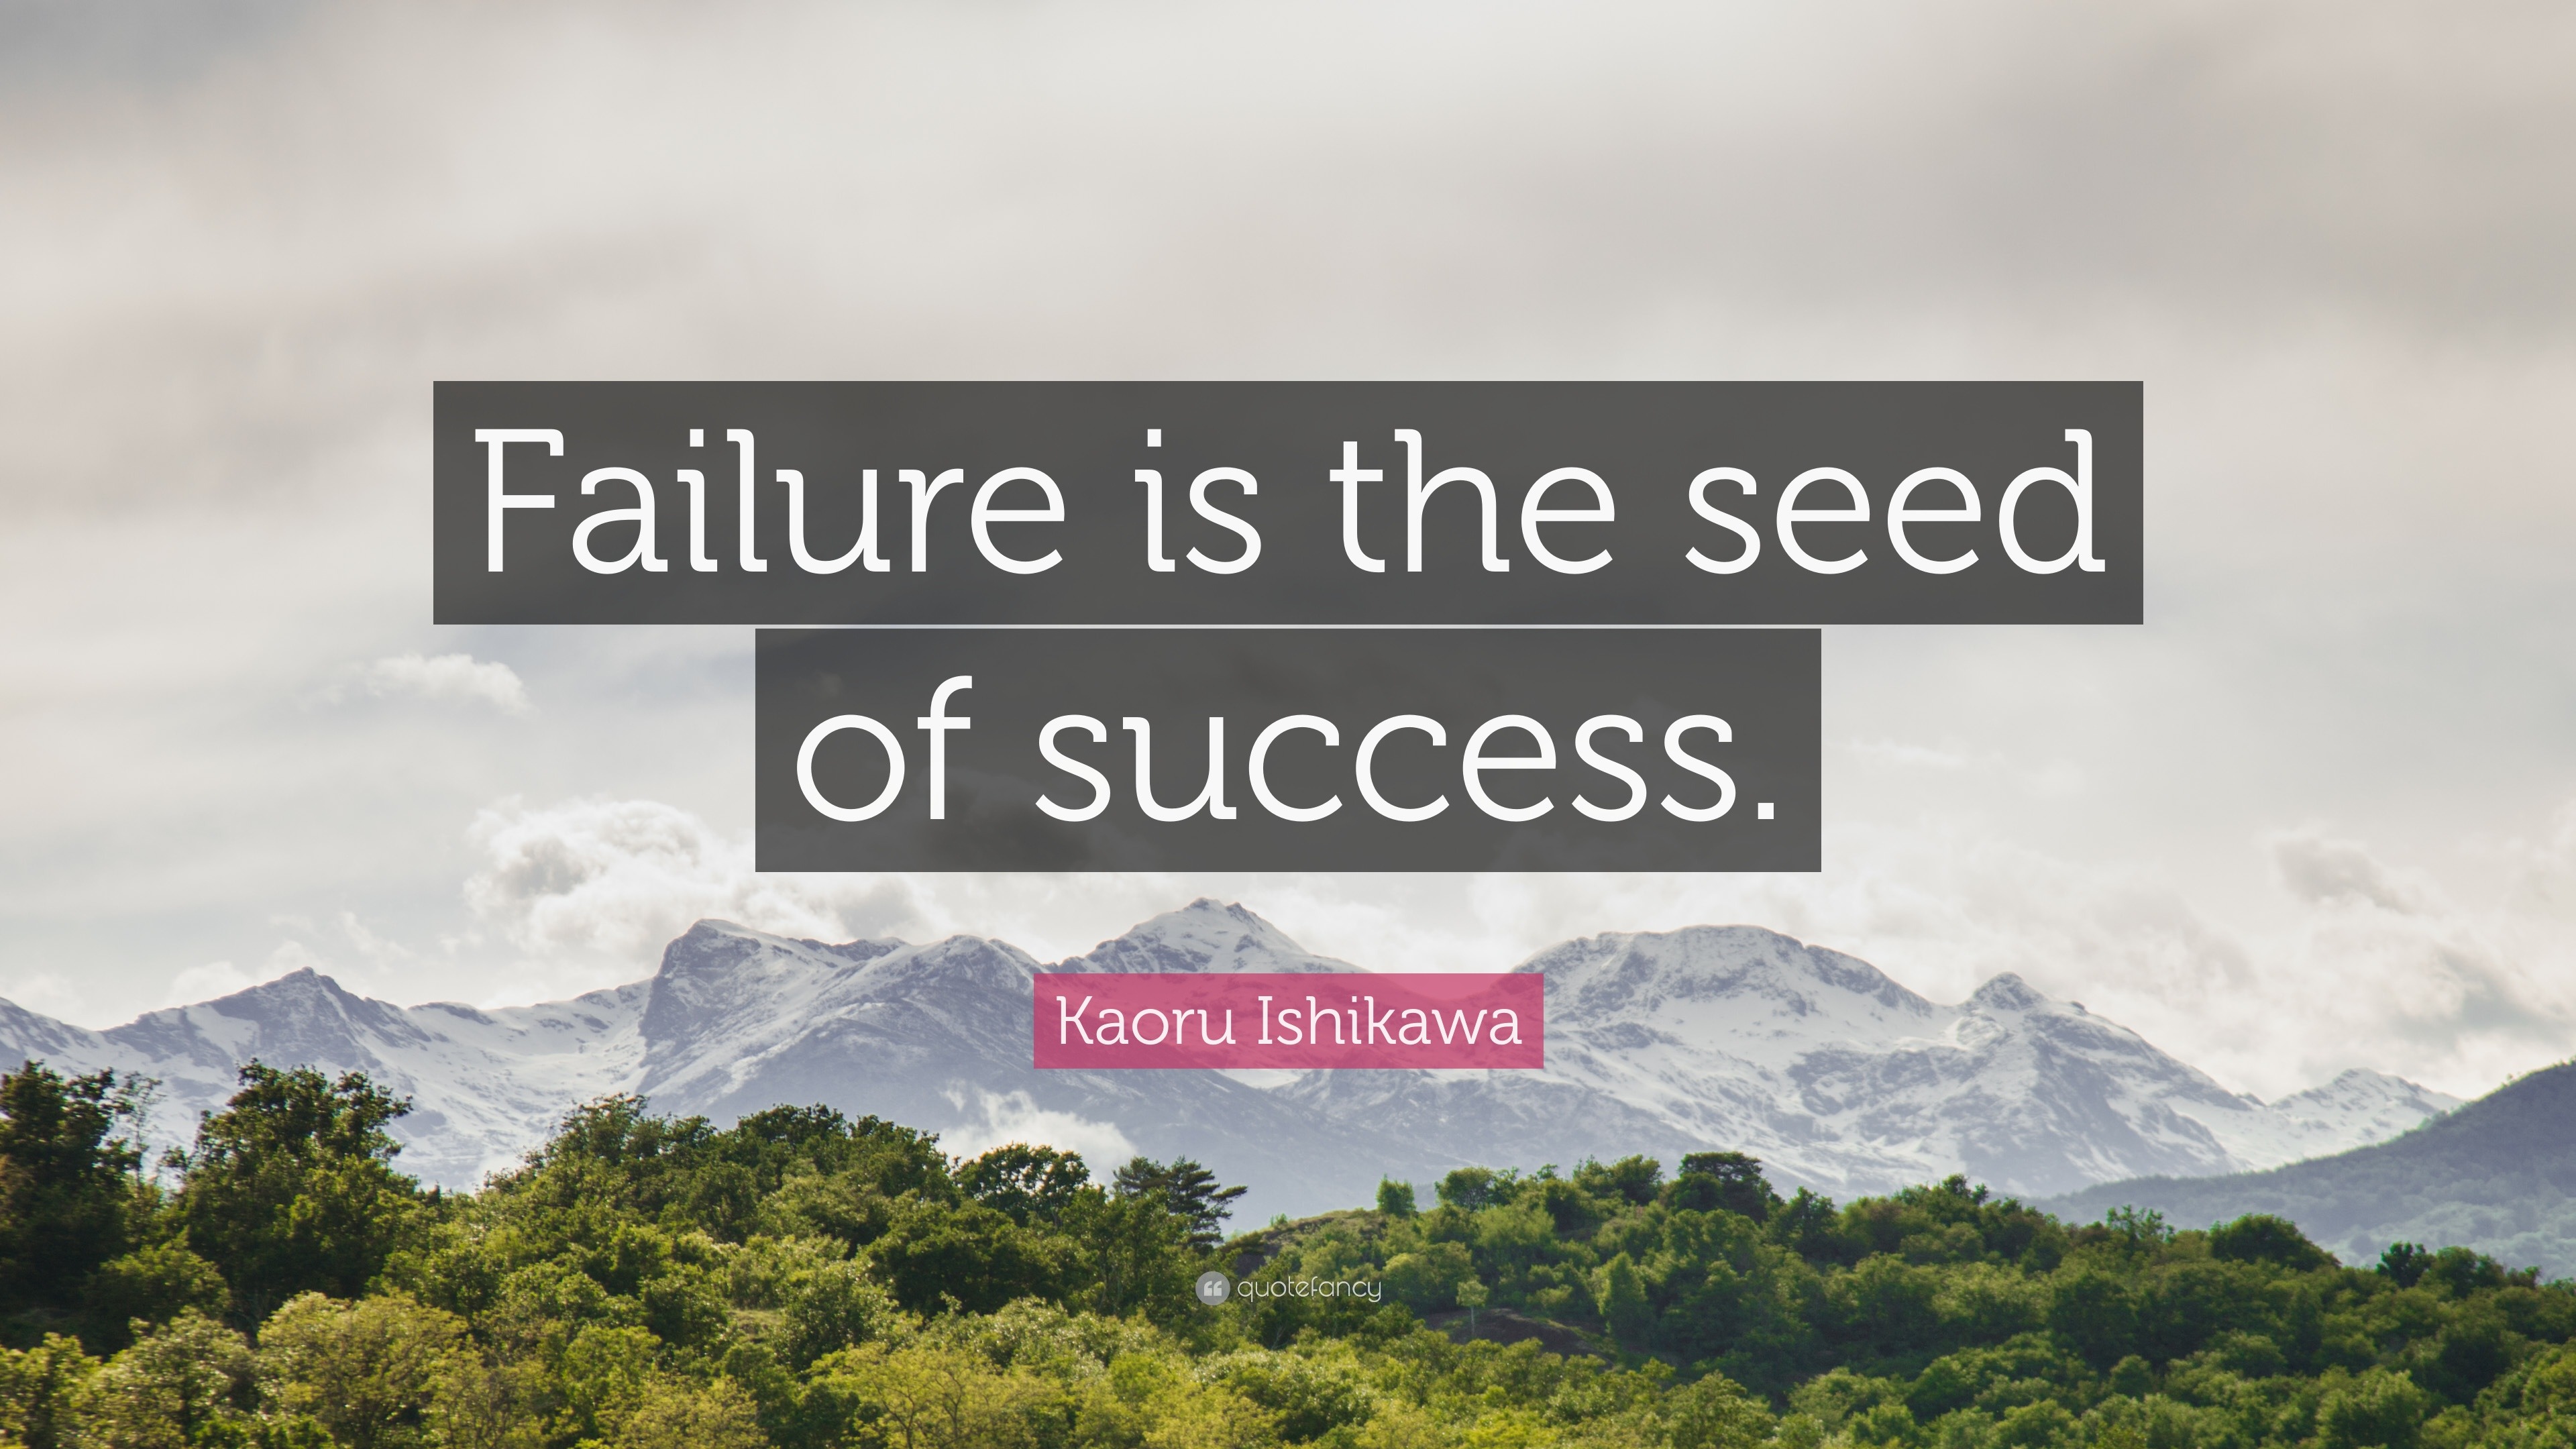 Kaoru Ishikawa Quote: “Failure is the seed of success.”